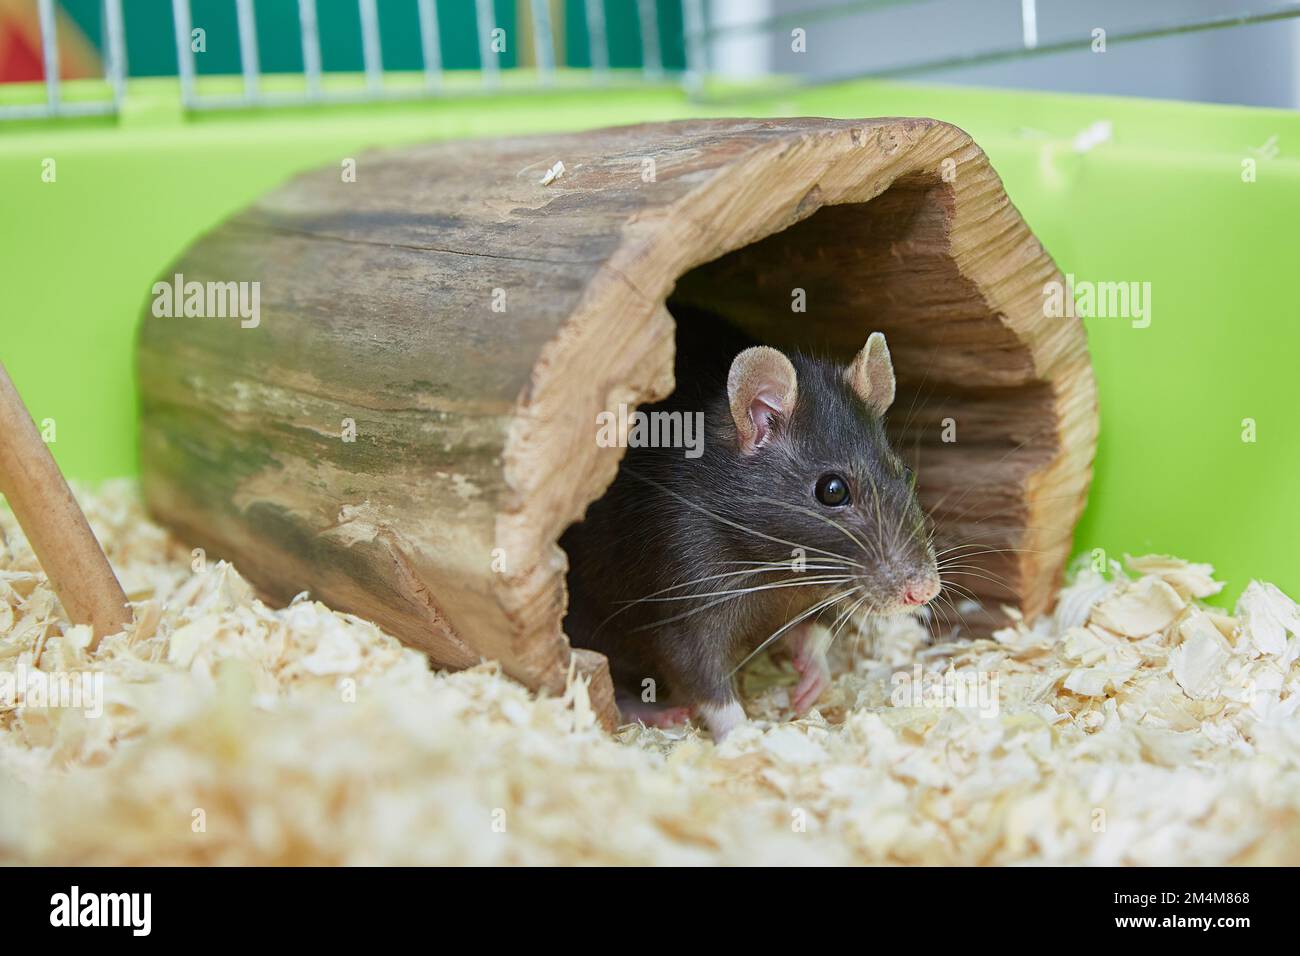 Rata negra Rattus rattus en una linda casa de madera en una jaula. rata doméstica y mascotas. Foto de stock